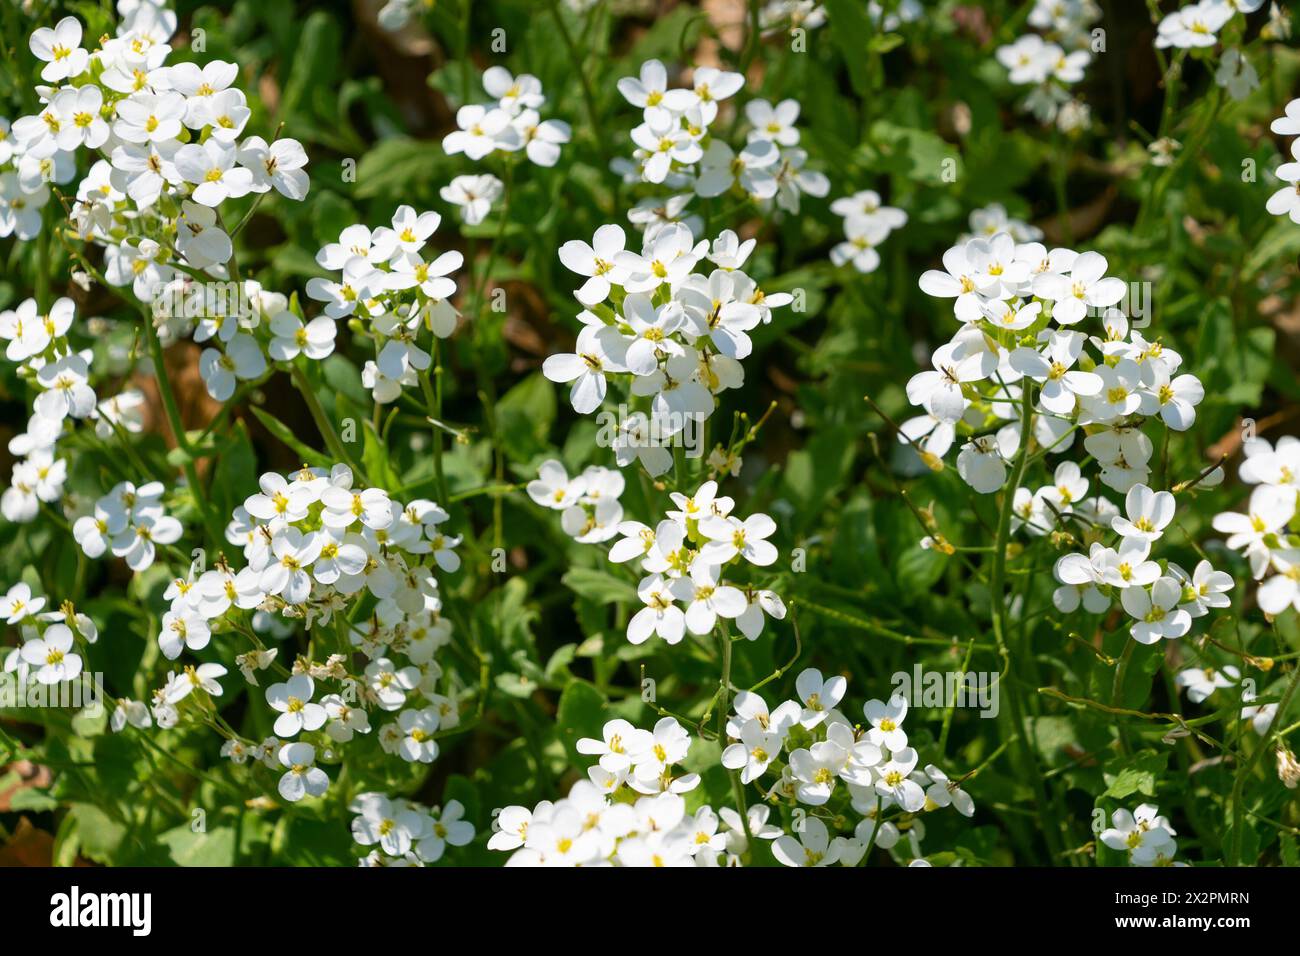 Belles petites fleurs blanches d'Arabis caucasica. Floraison printanière. Jardin arabis, cresson rocheux de montagne, cresson caucasien. Banque D'Images